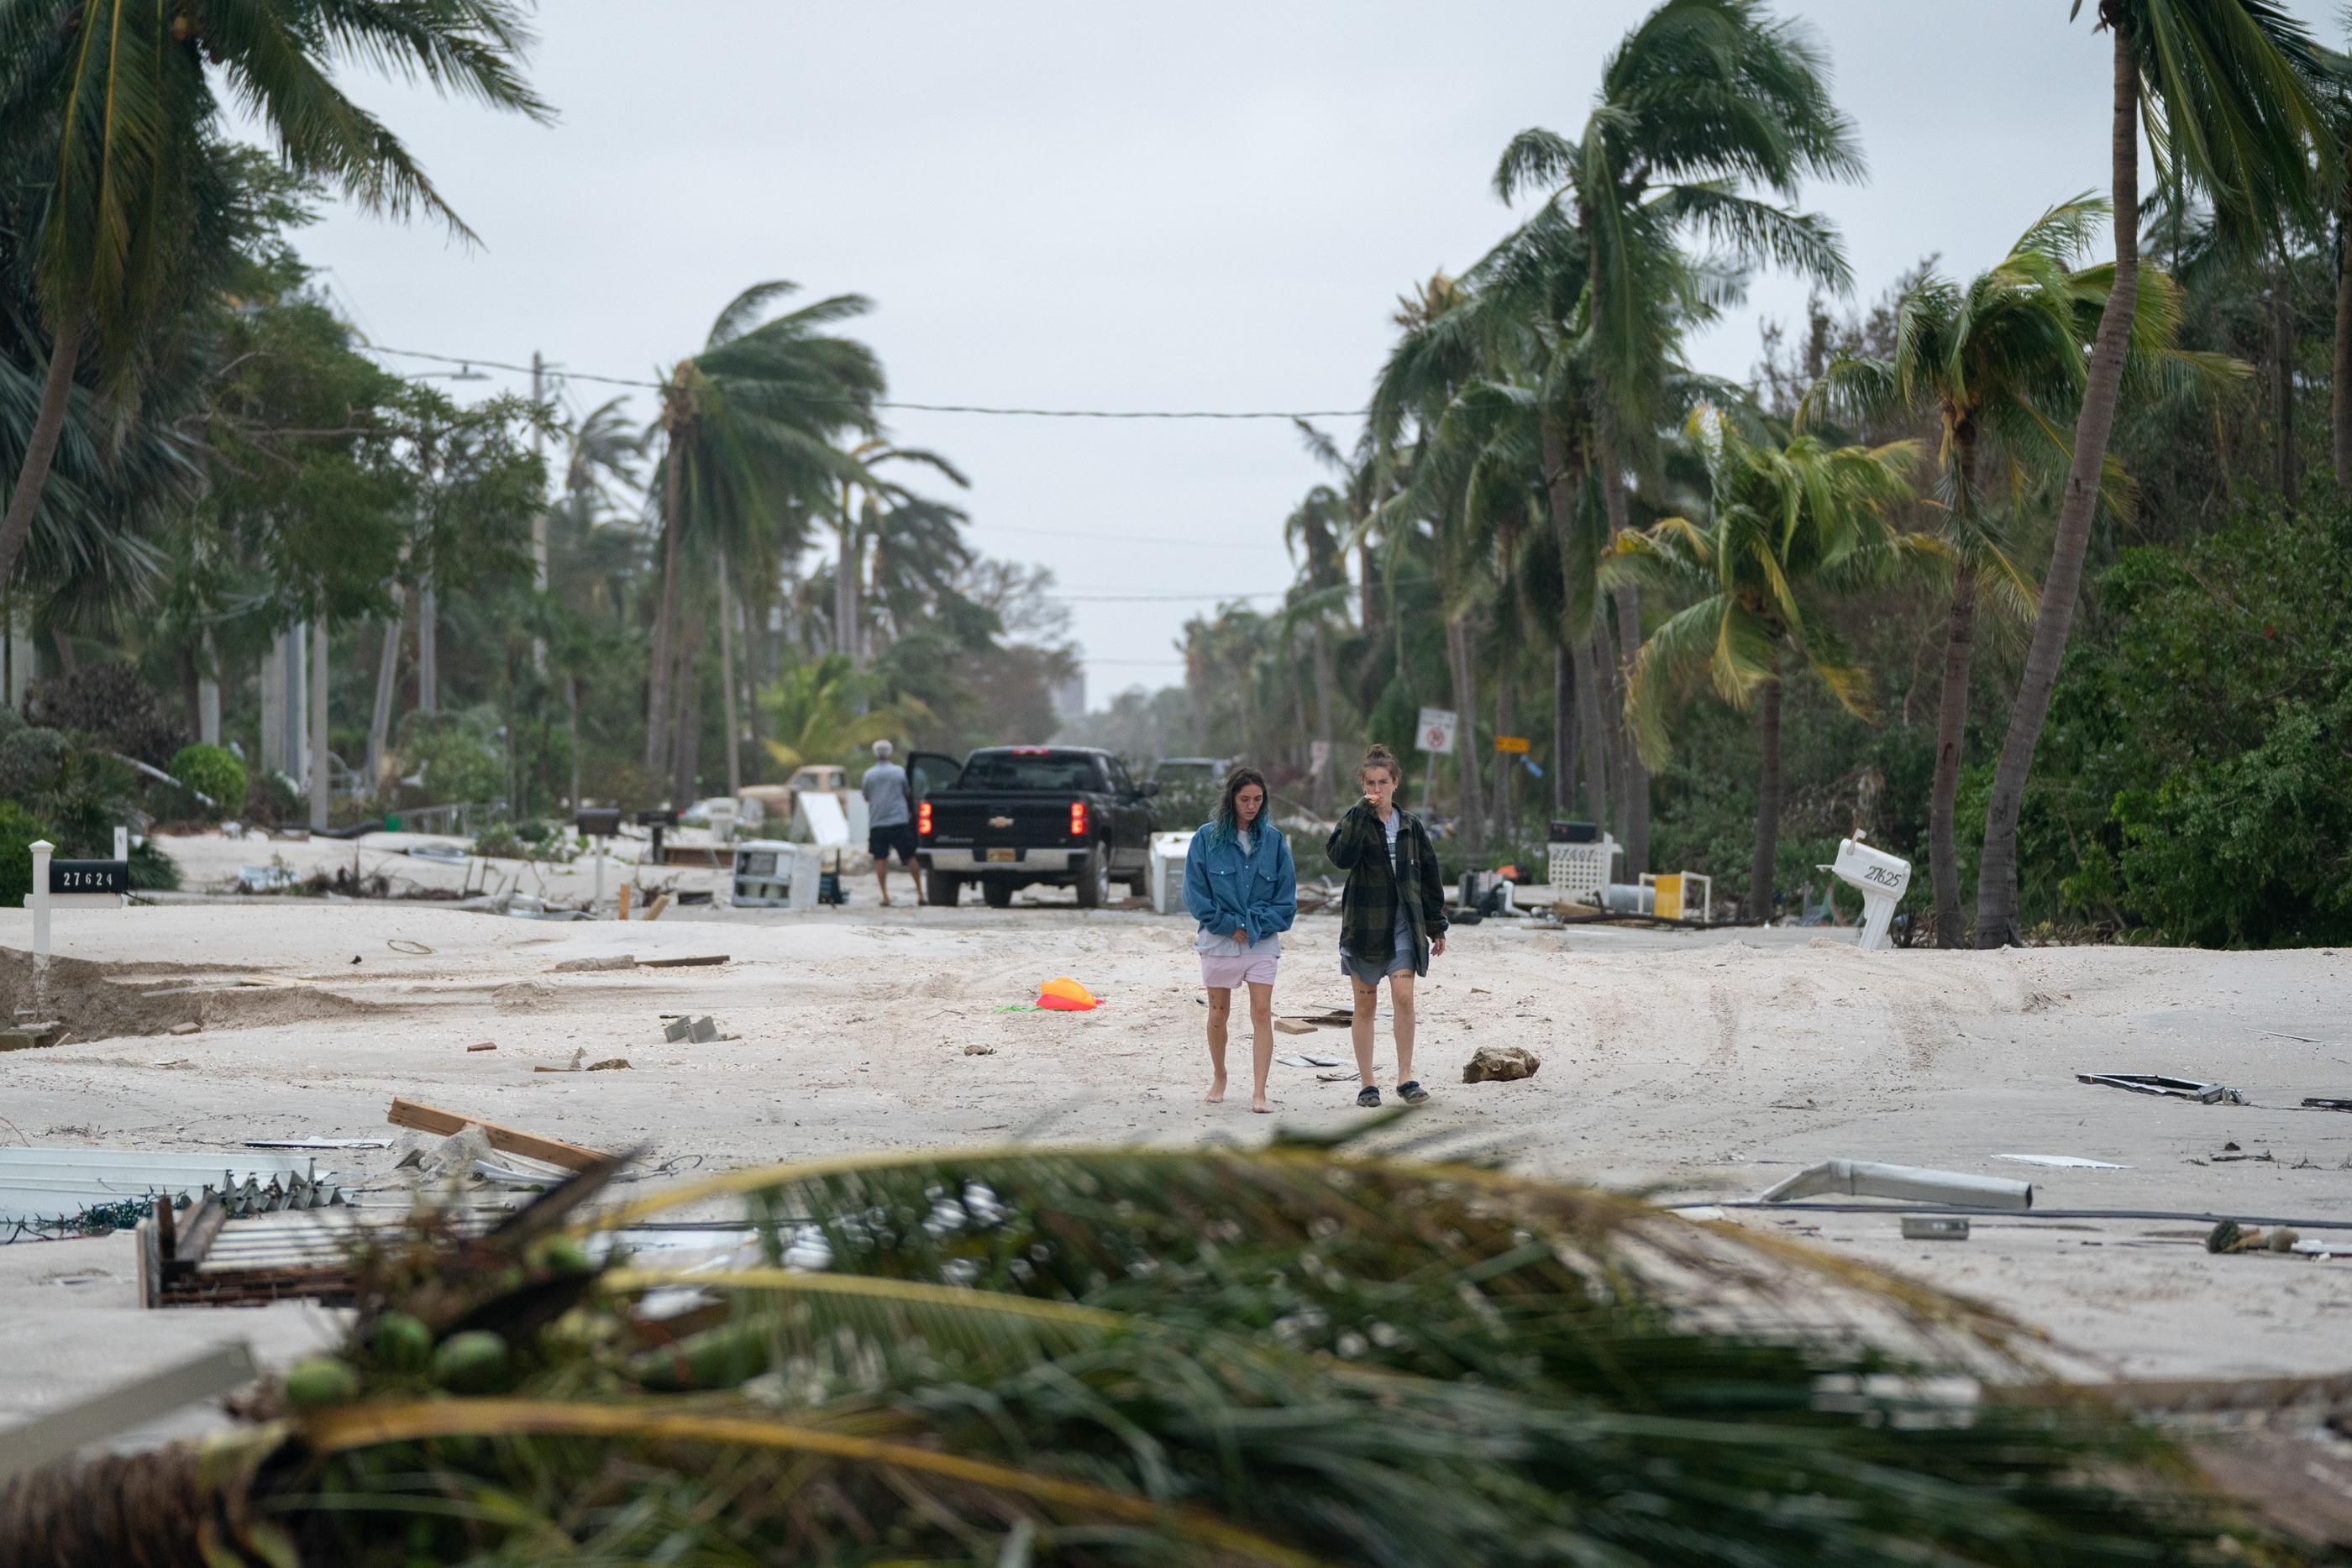 Le dernier bilan des autorités fait état de 12 personnes décédées après le passage de l'ouragan Ian. AFP/Sean Rayford/Getty Images